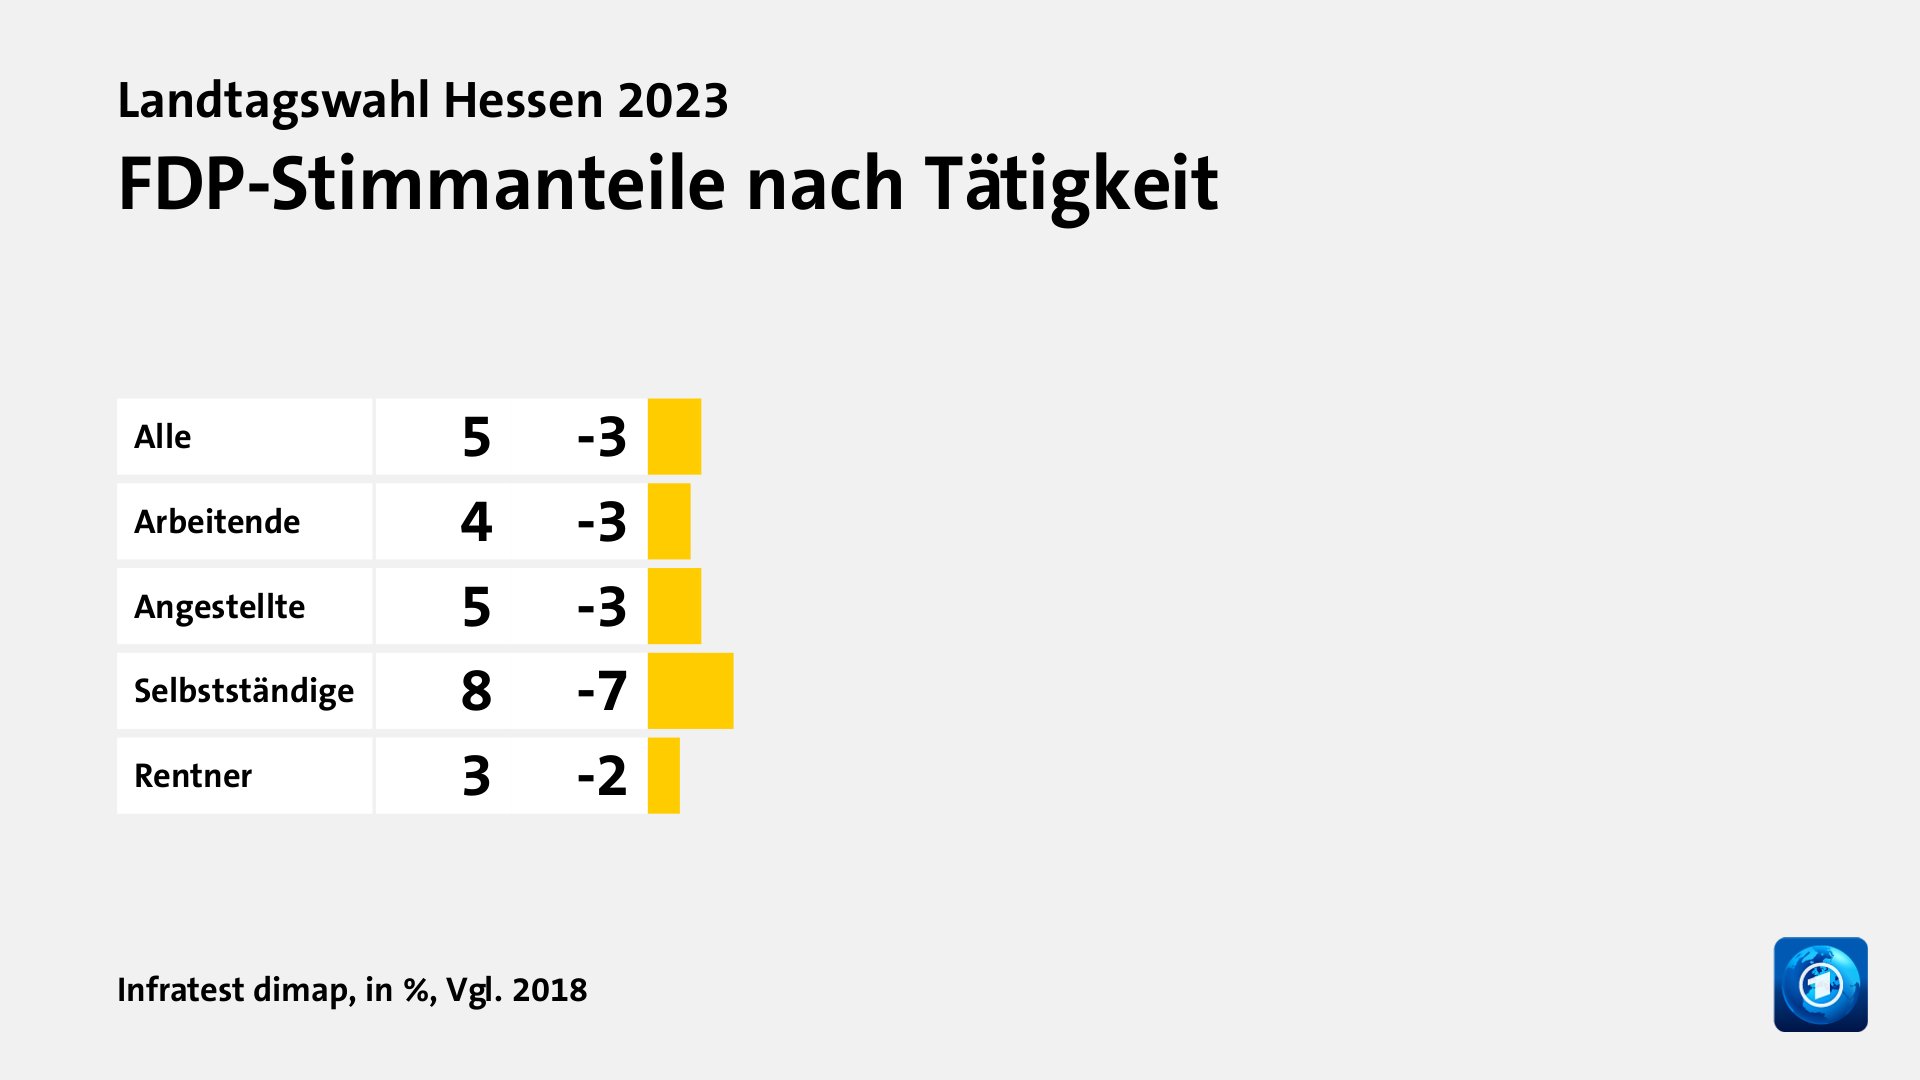 FDP-Stimmanteile nach Tätigkeit, in %, Vgl. 2018: Alle 5, Arbeitende 4, Angestellte 5, Selbstständige 8, Rentner 3, Quelle: Infratest dimap